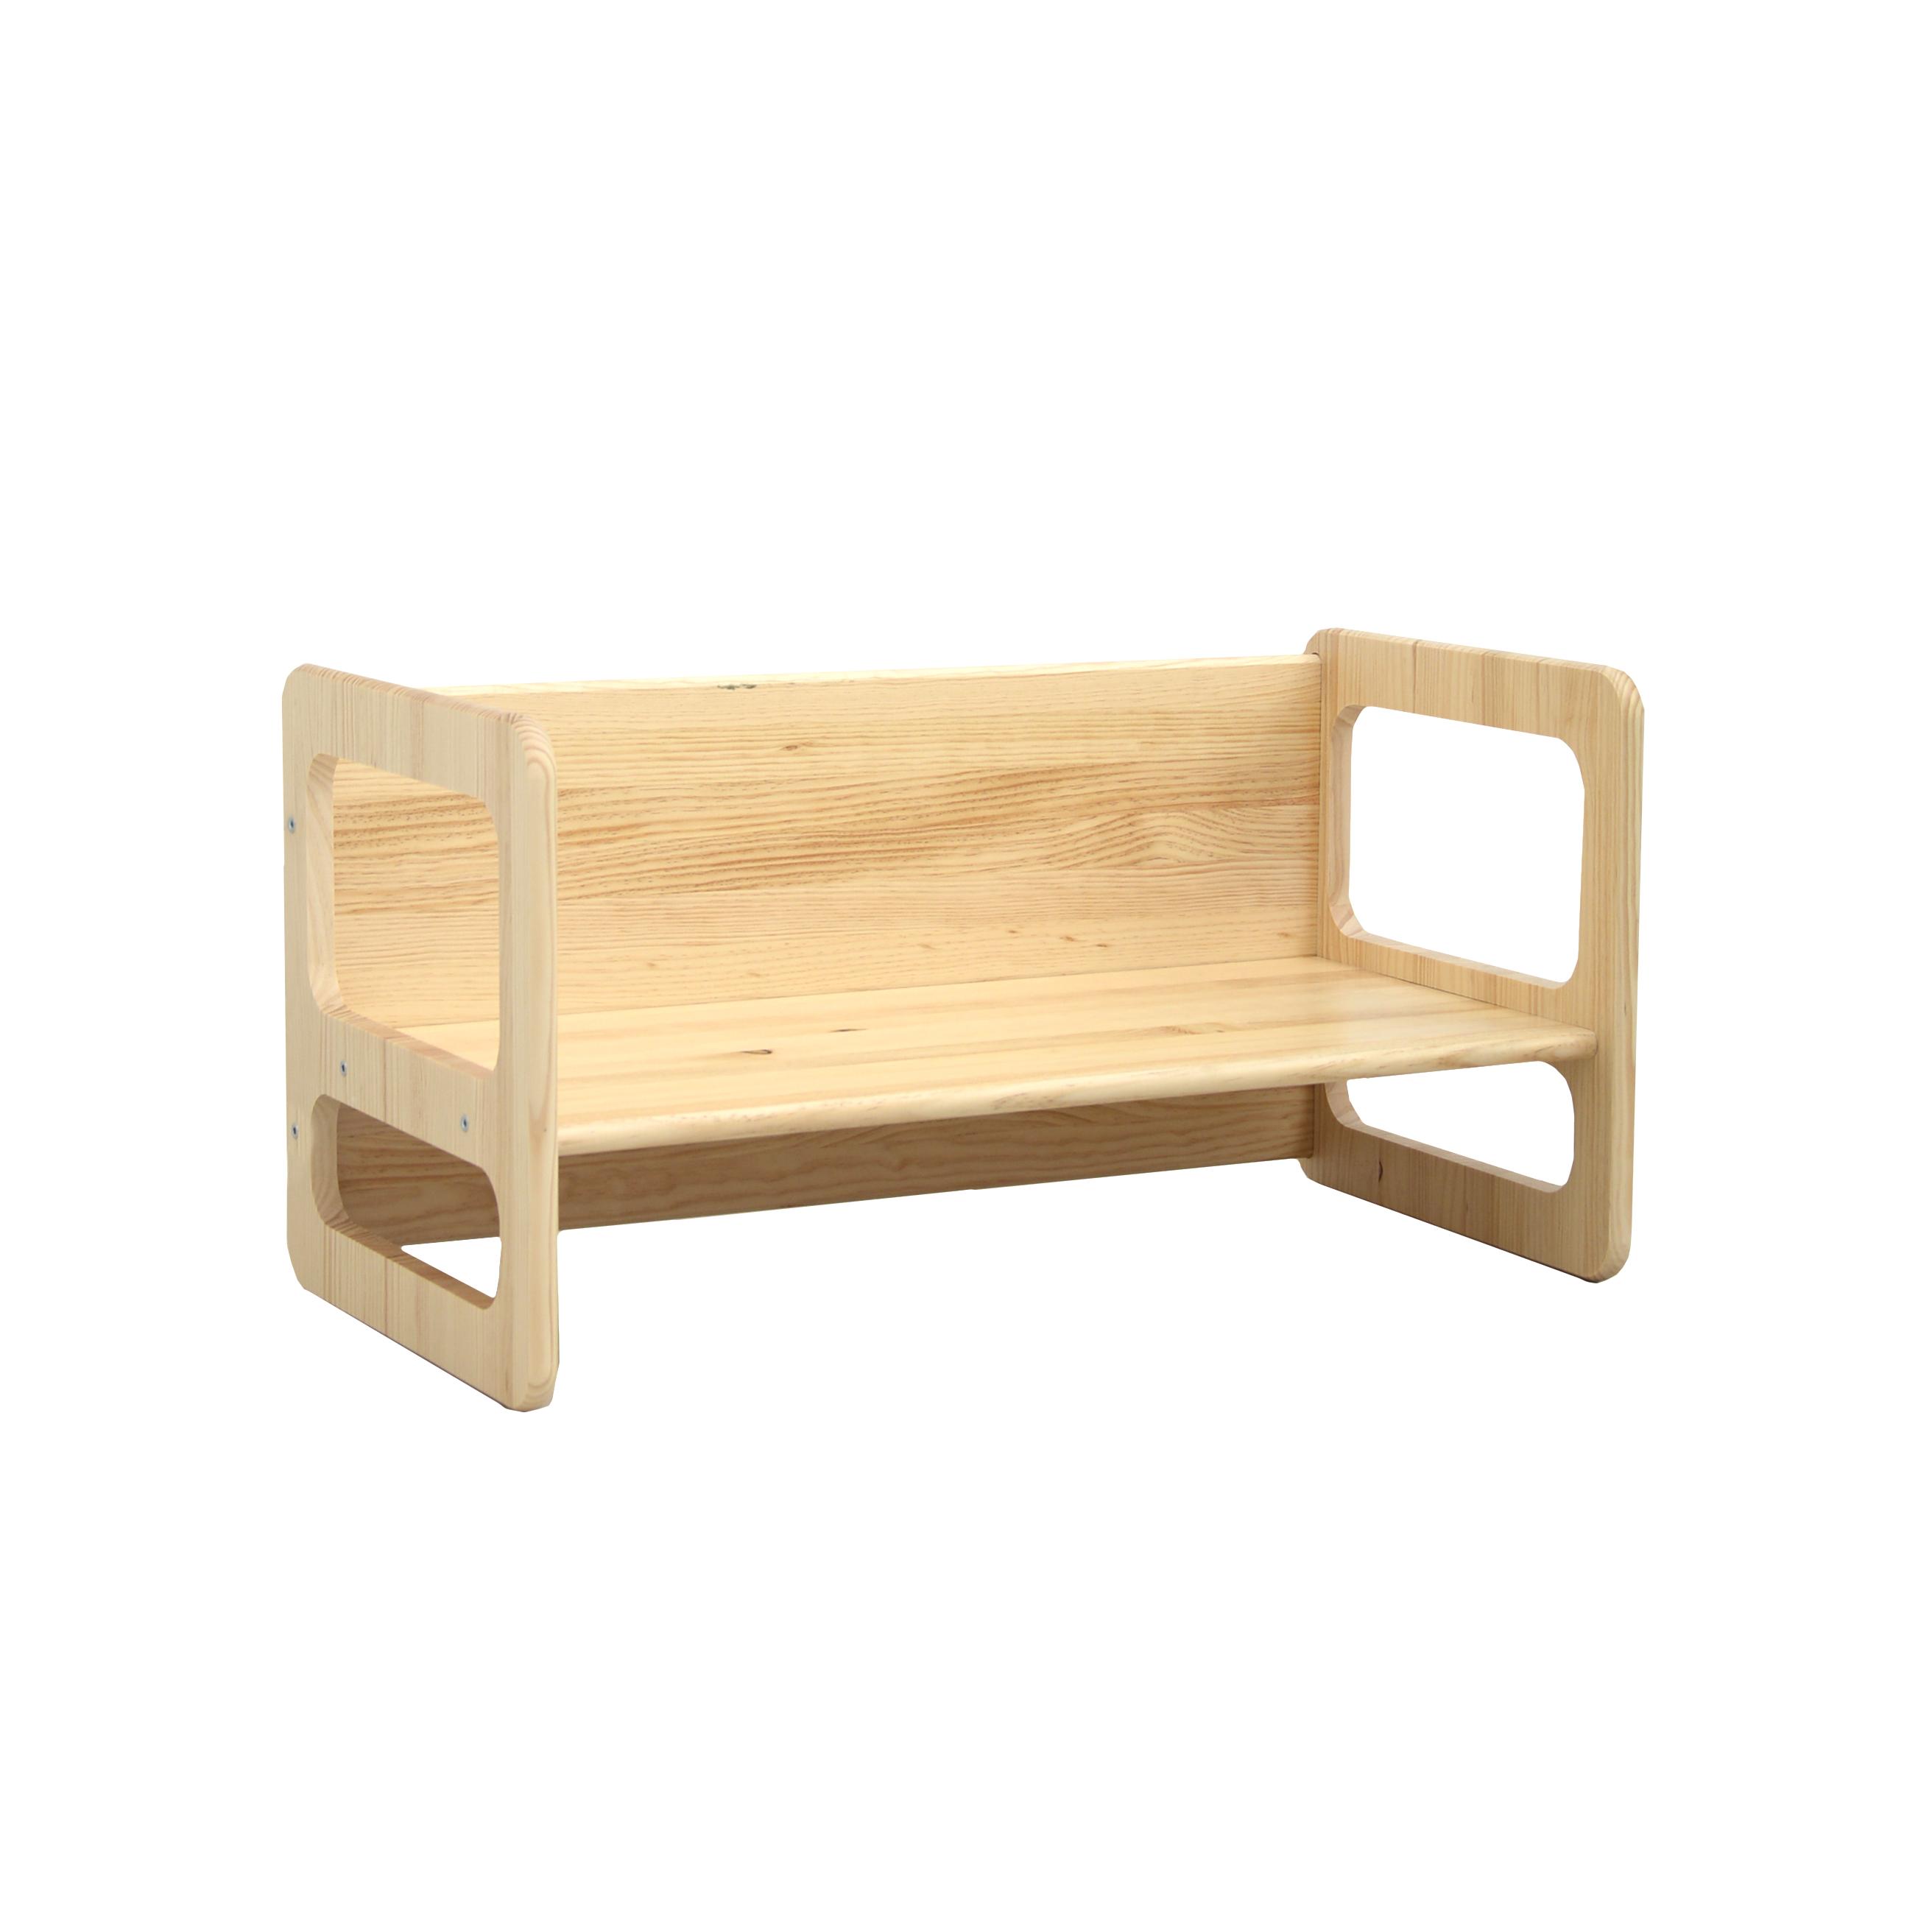 Tradineur - Silla infantil de madera sin tratar, respaldo de pico, altura  del asiento 22,8 cm, silla para niños con reposapiés